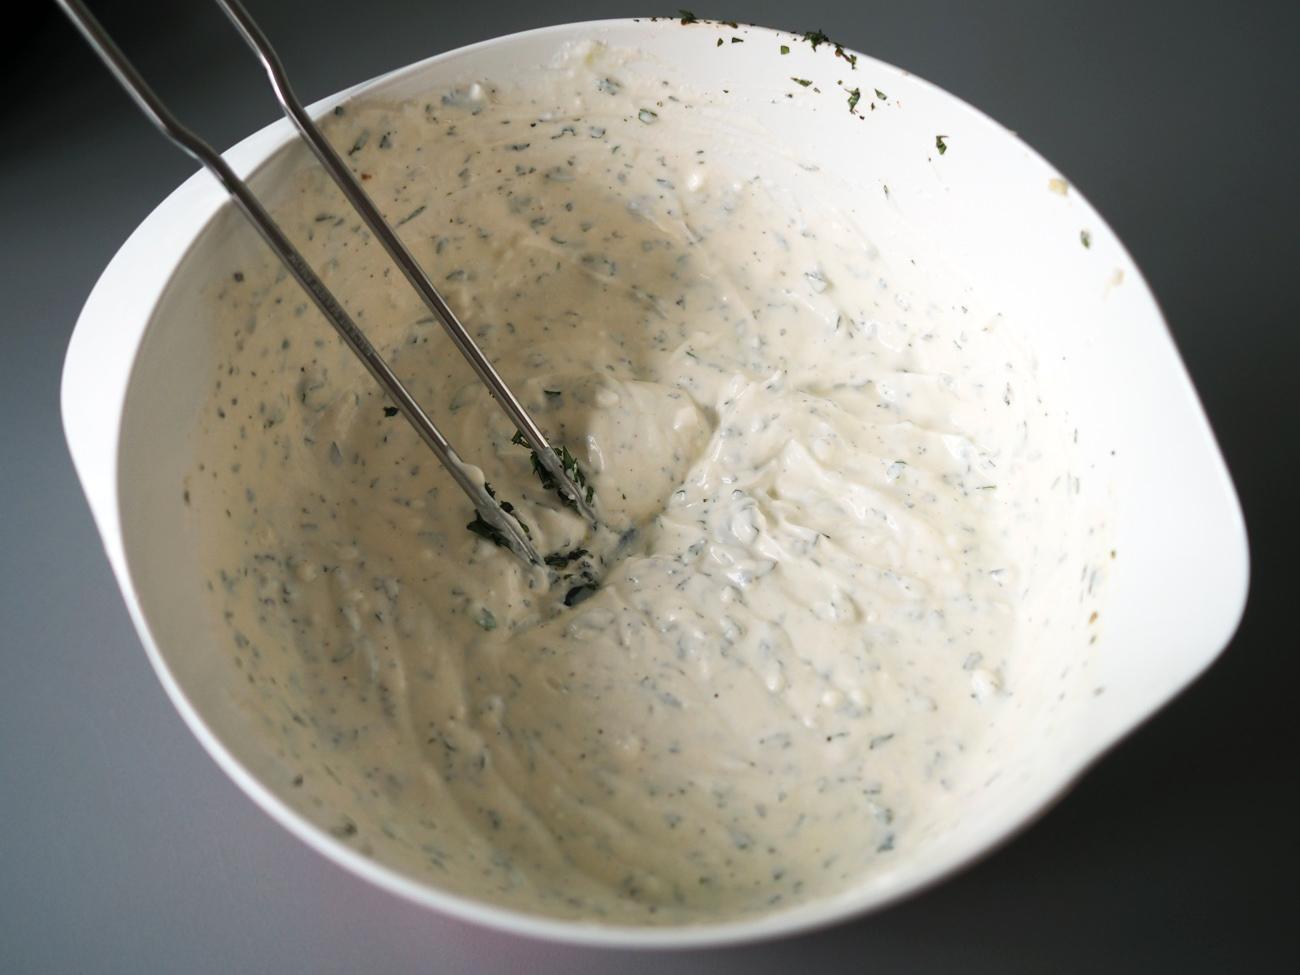 Lag en enkel raita ved å røre sammen yoghurt med finhakket mynte, olivenolje, salt og pepper.